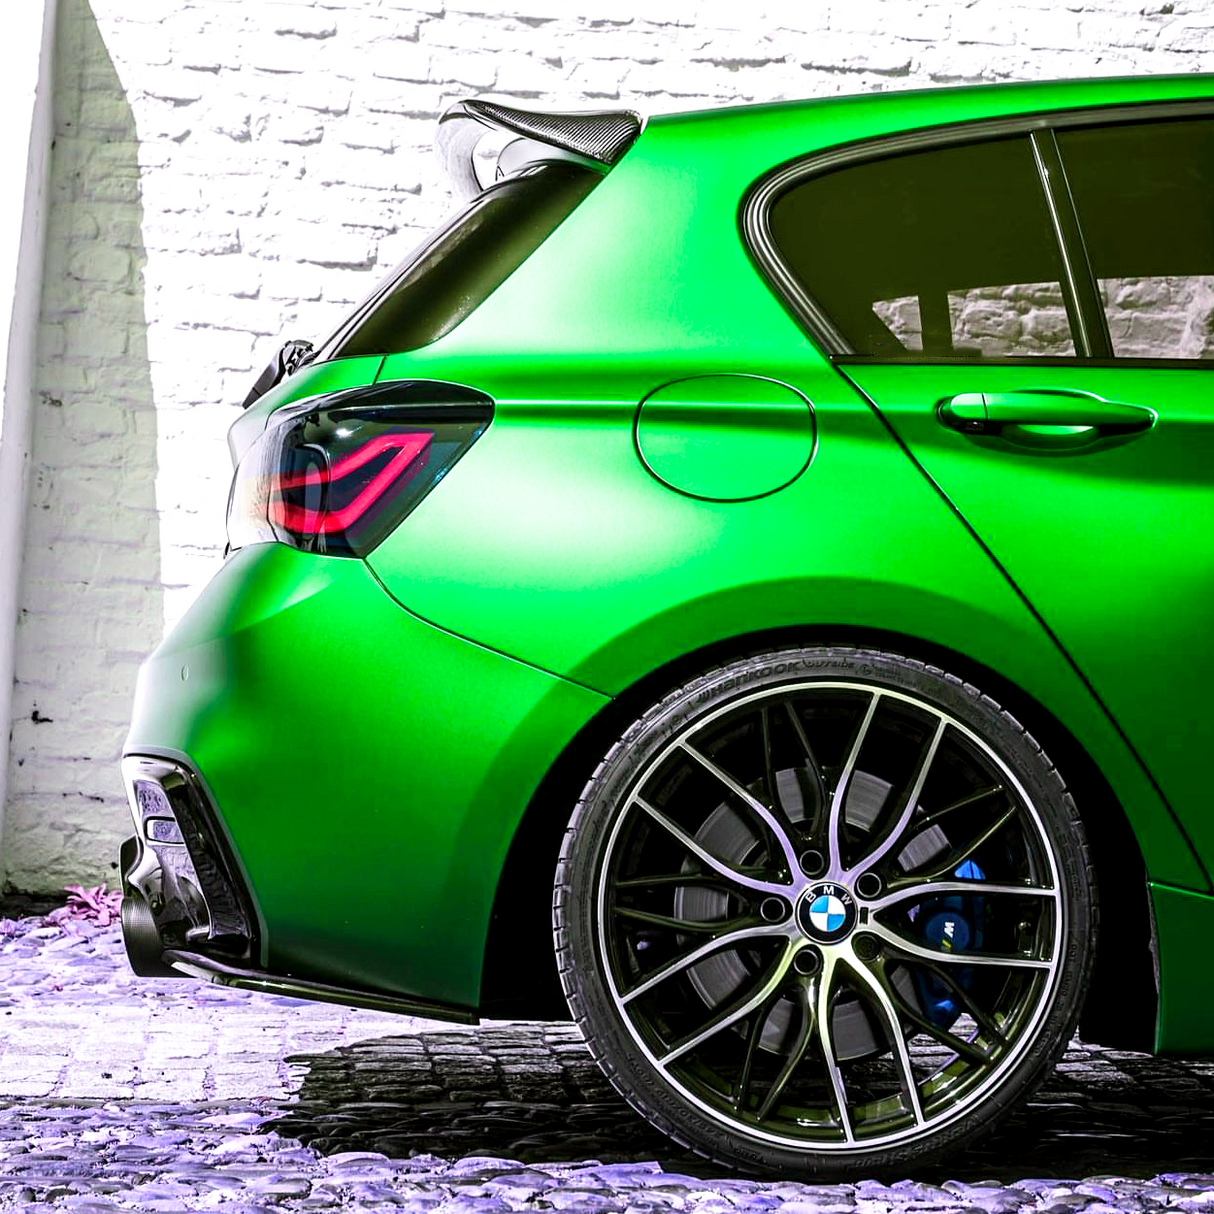 BMW 1 Series (E87) Hatchback AC Style Carbon Fibre Rear Spoiler